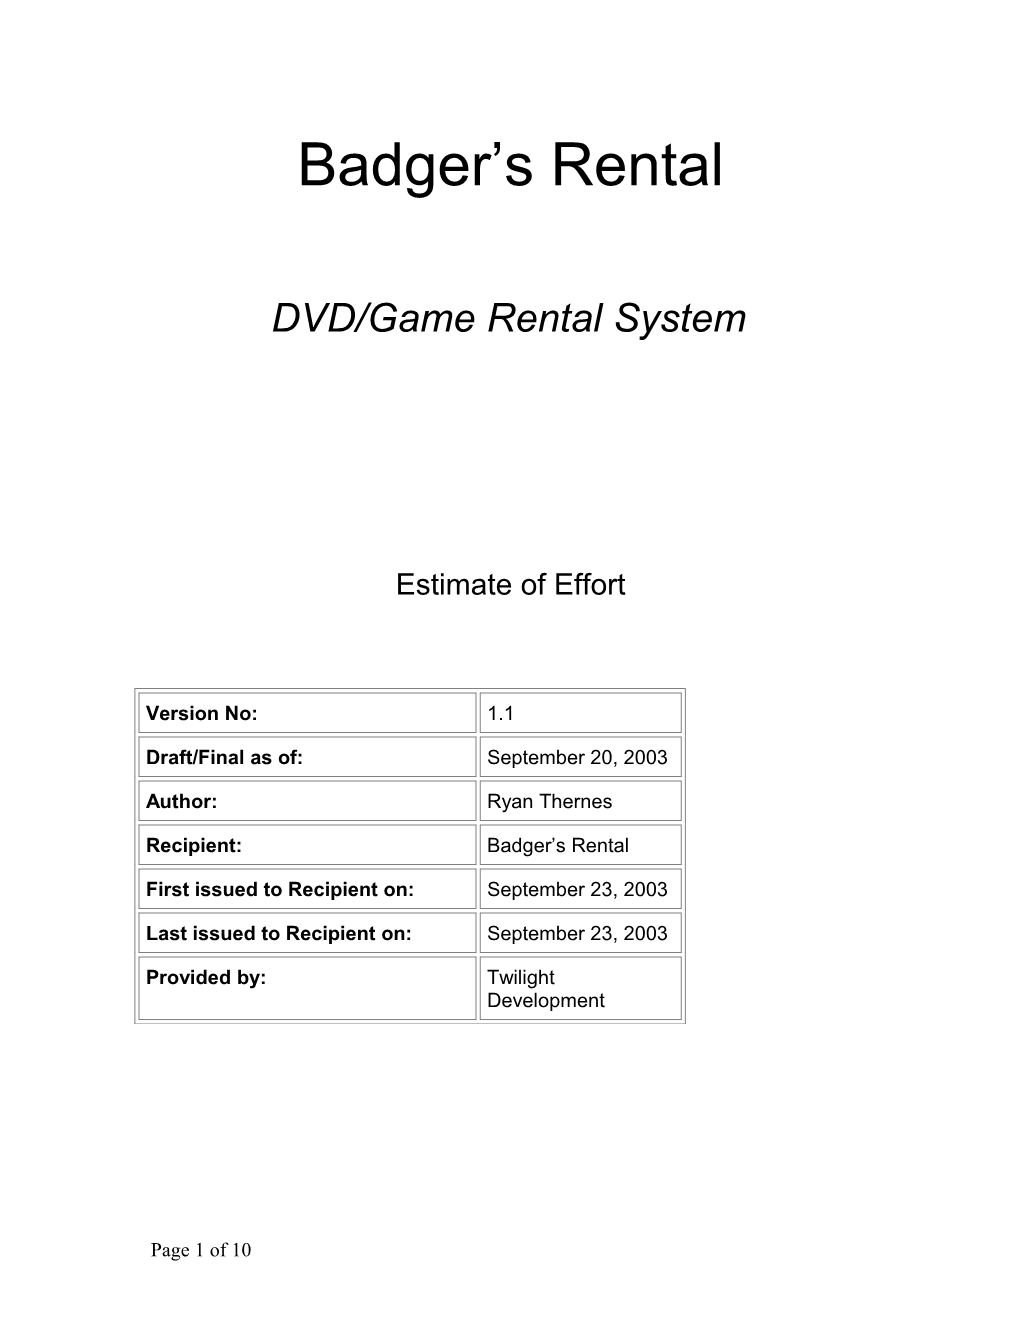 DVD/Game Rental System